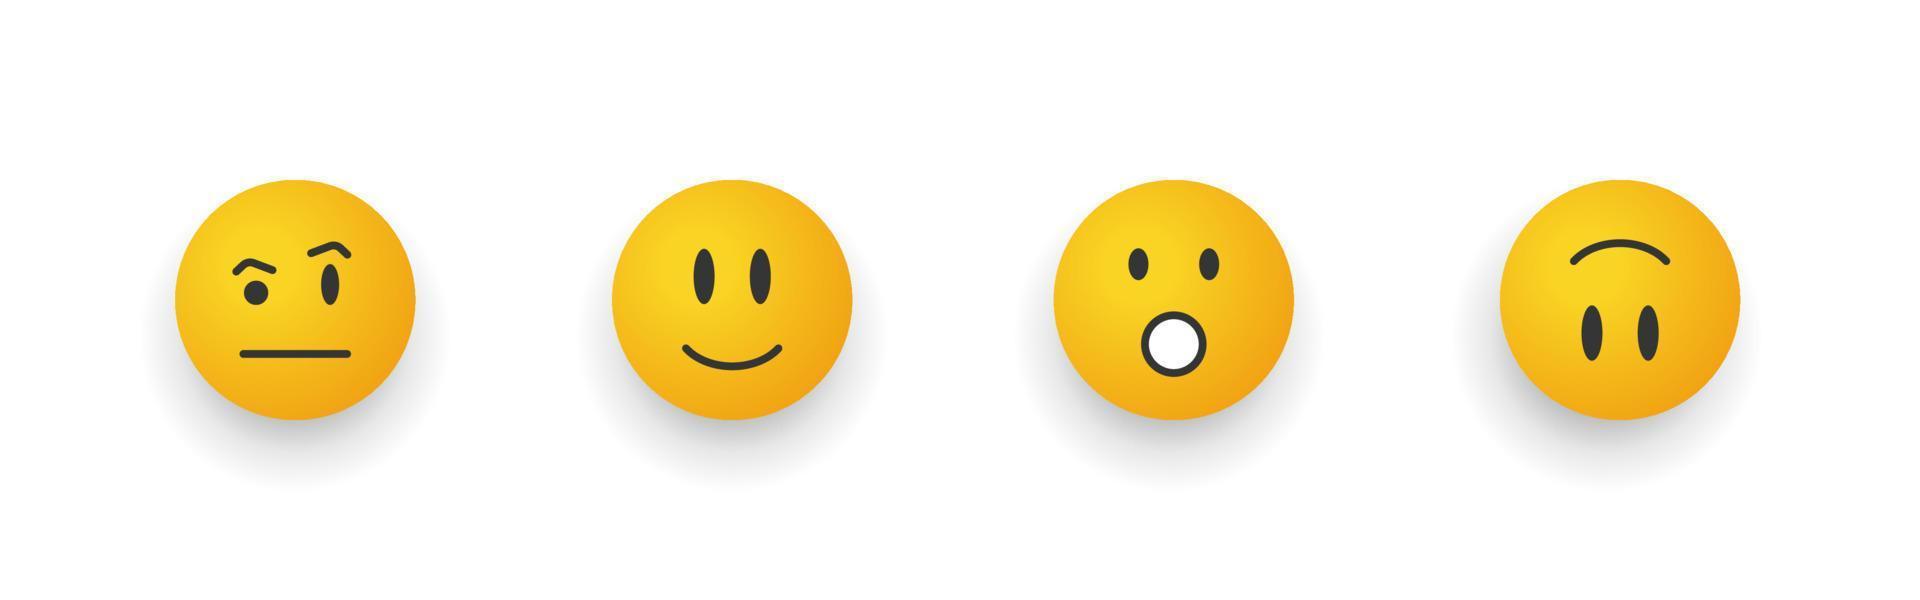 sonrisa de emoticono. conjunto de emojis de dibujos animados. caras sonrientes con asombro. ilustración vectorial vector